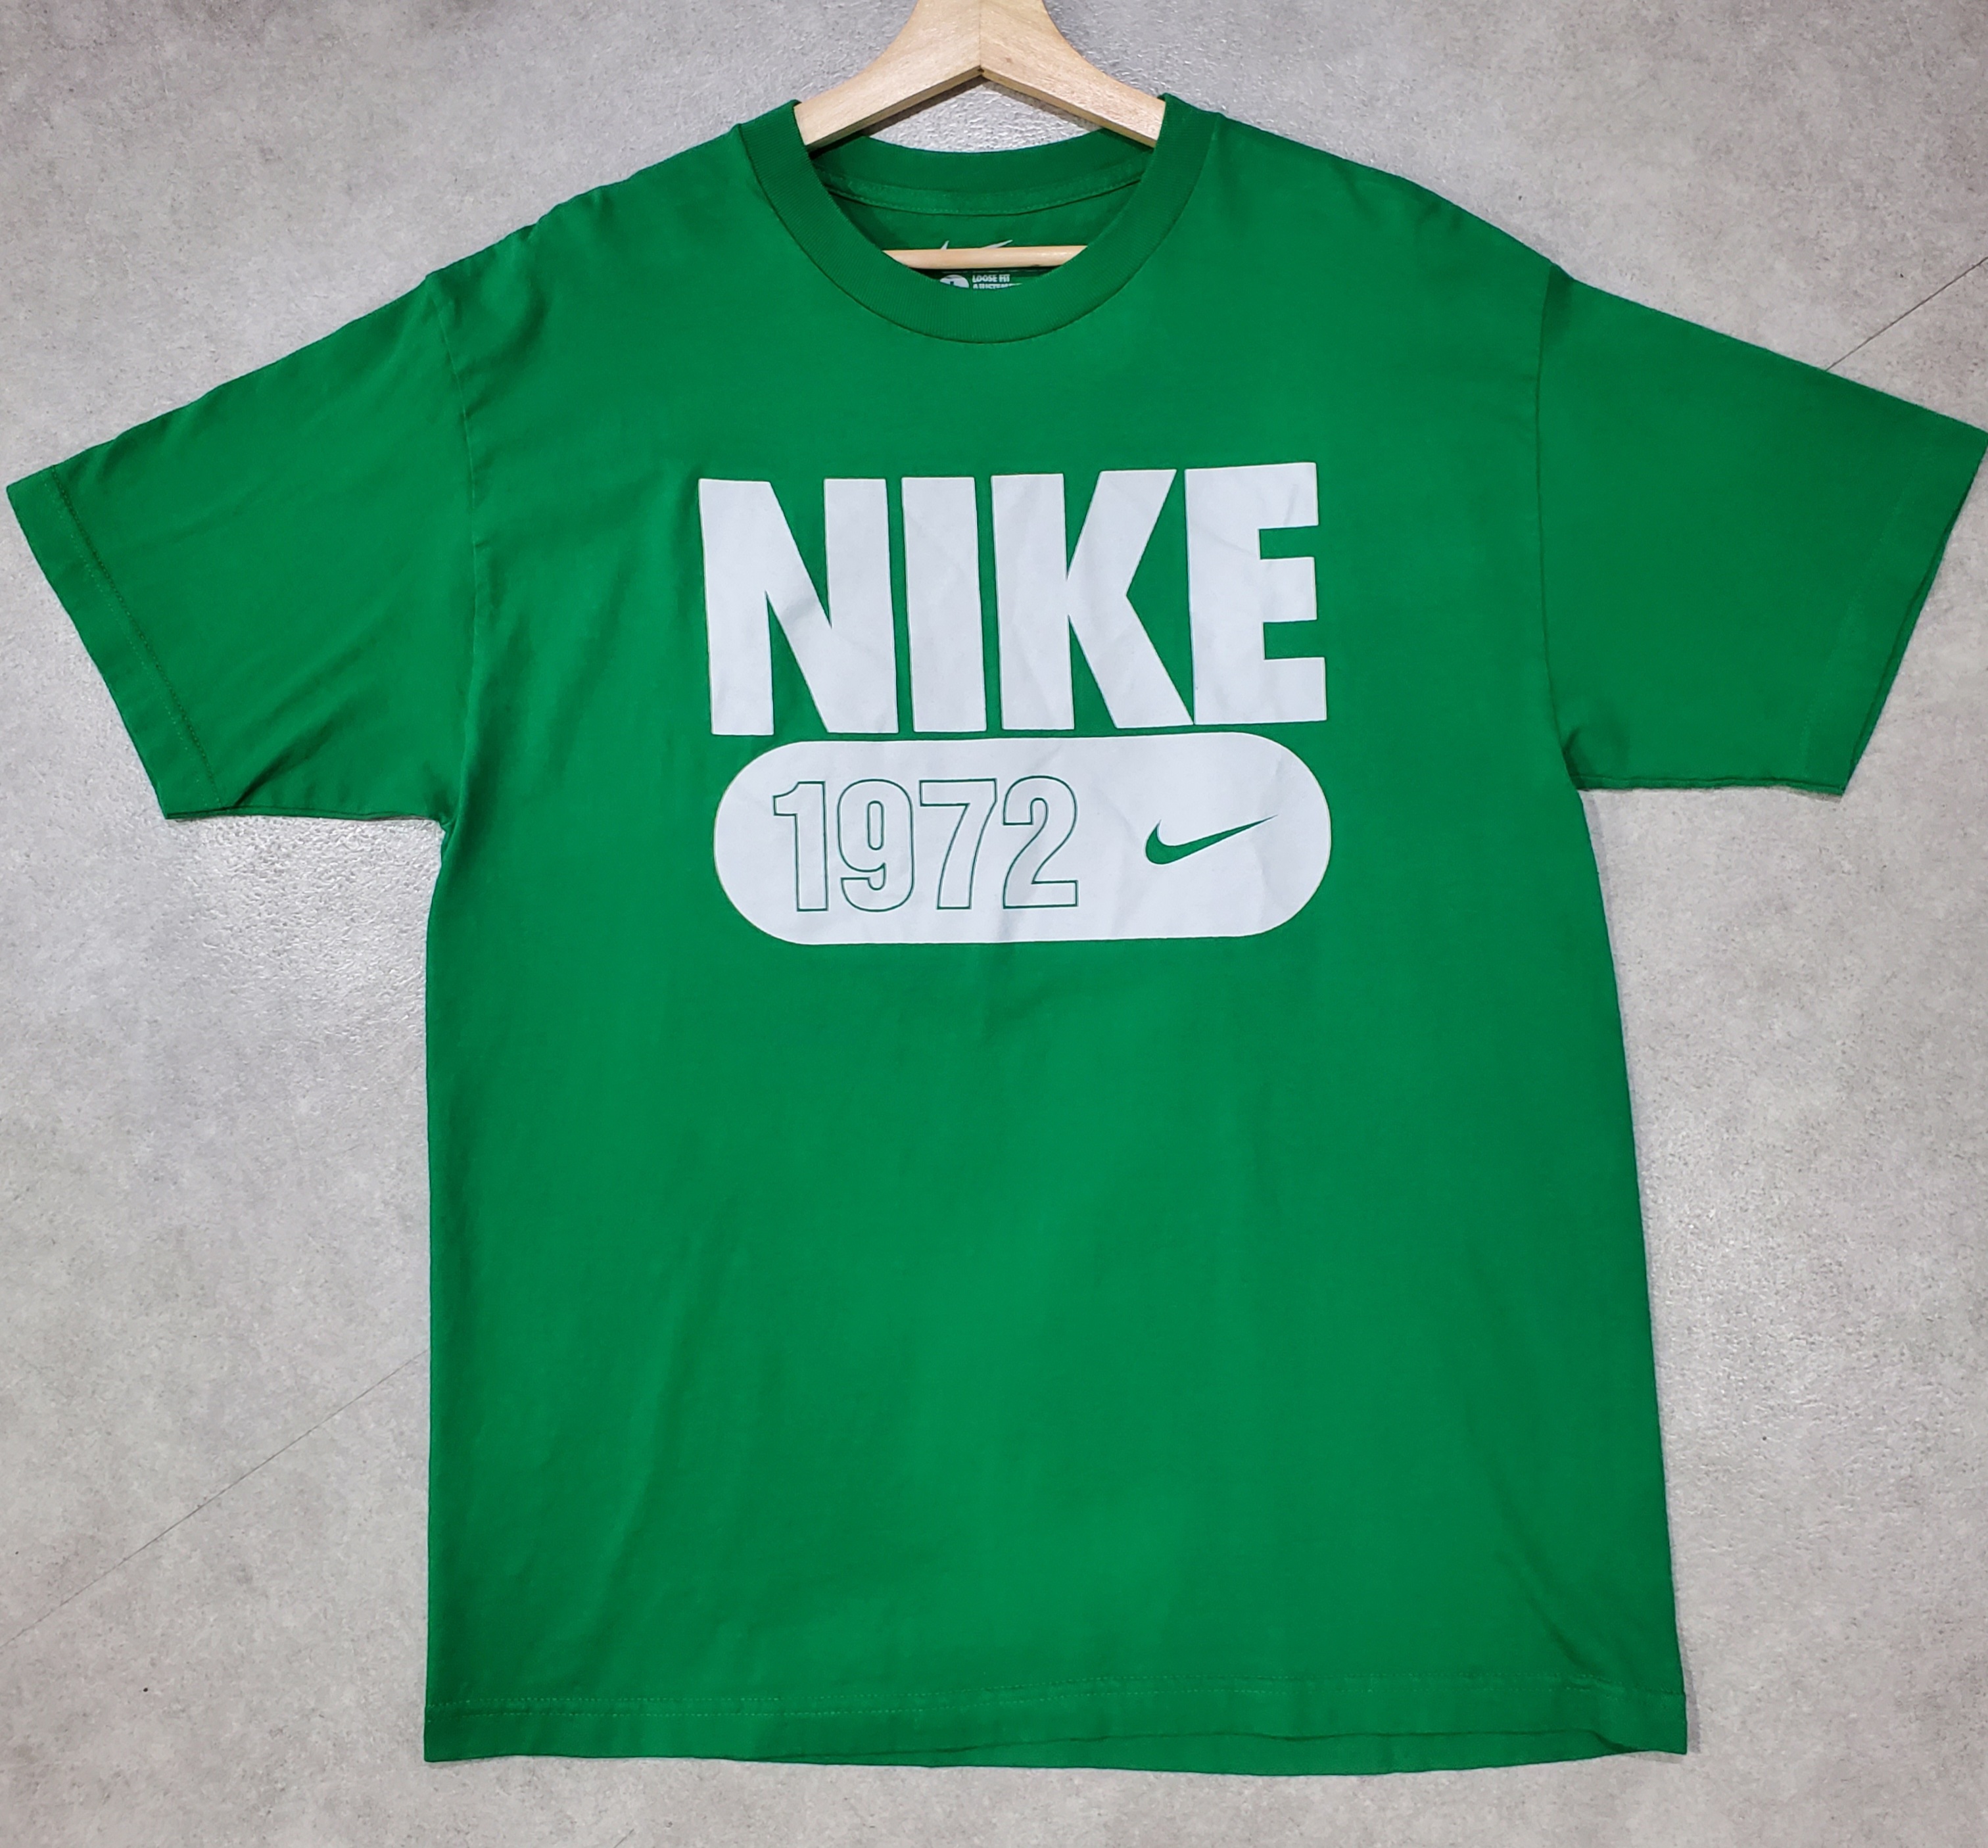 nike ナイキ メキシコ製ビッグロゴプリントティーシャツみどり 緑